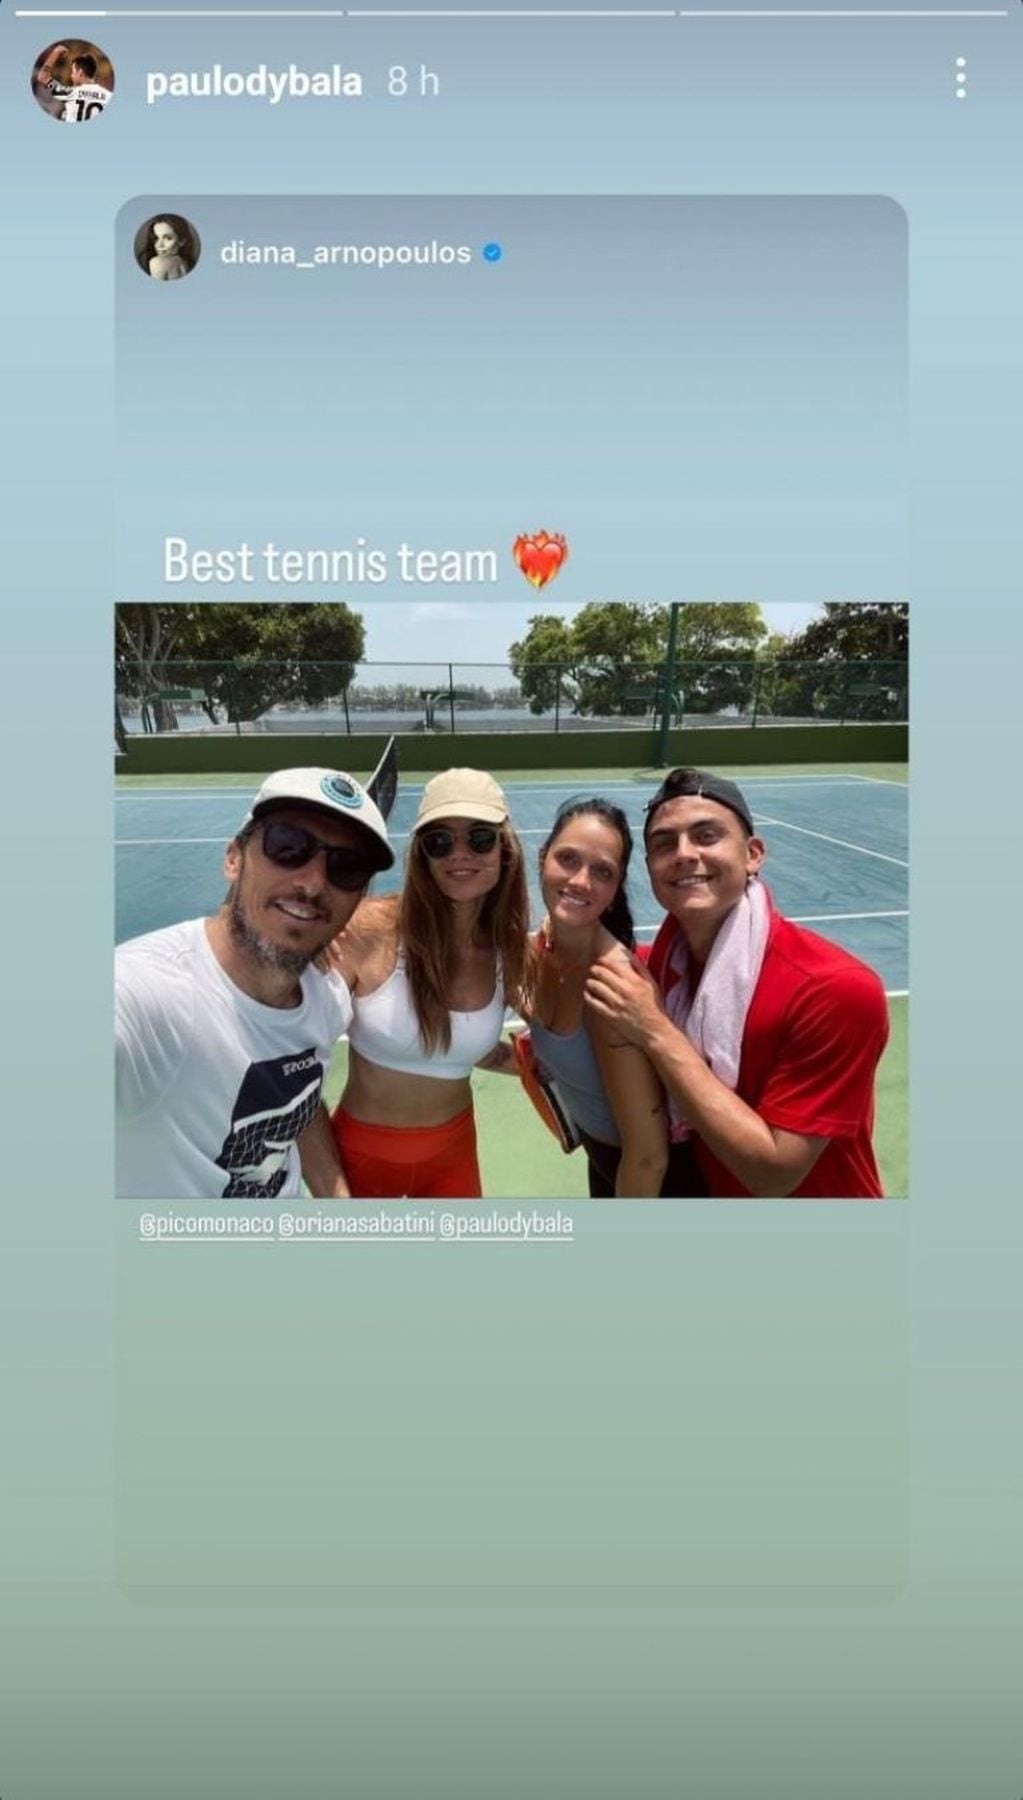 Dybala y Oriana vs Mónaco y Diana, al tenis en Miami